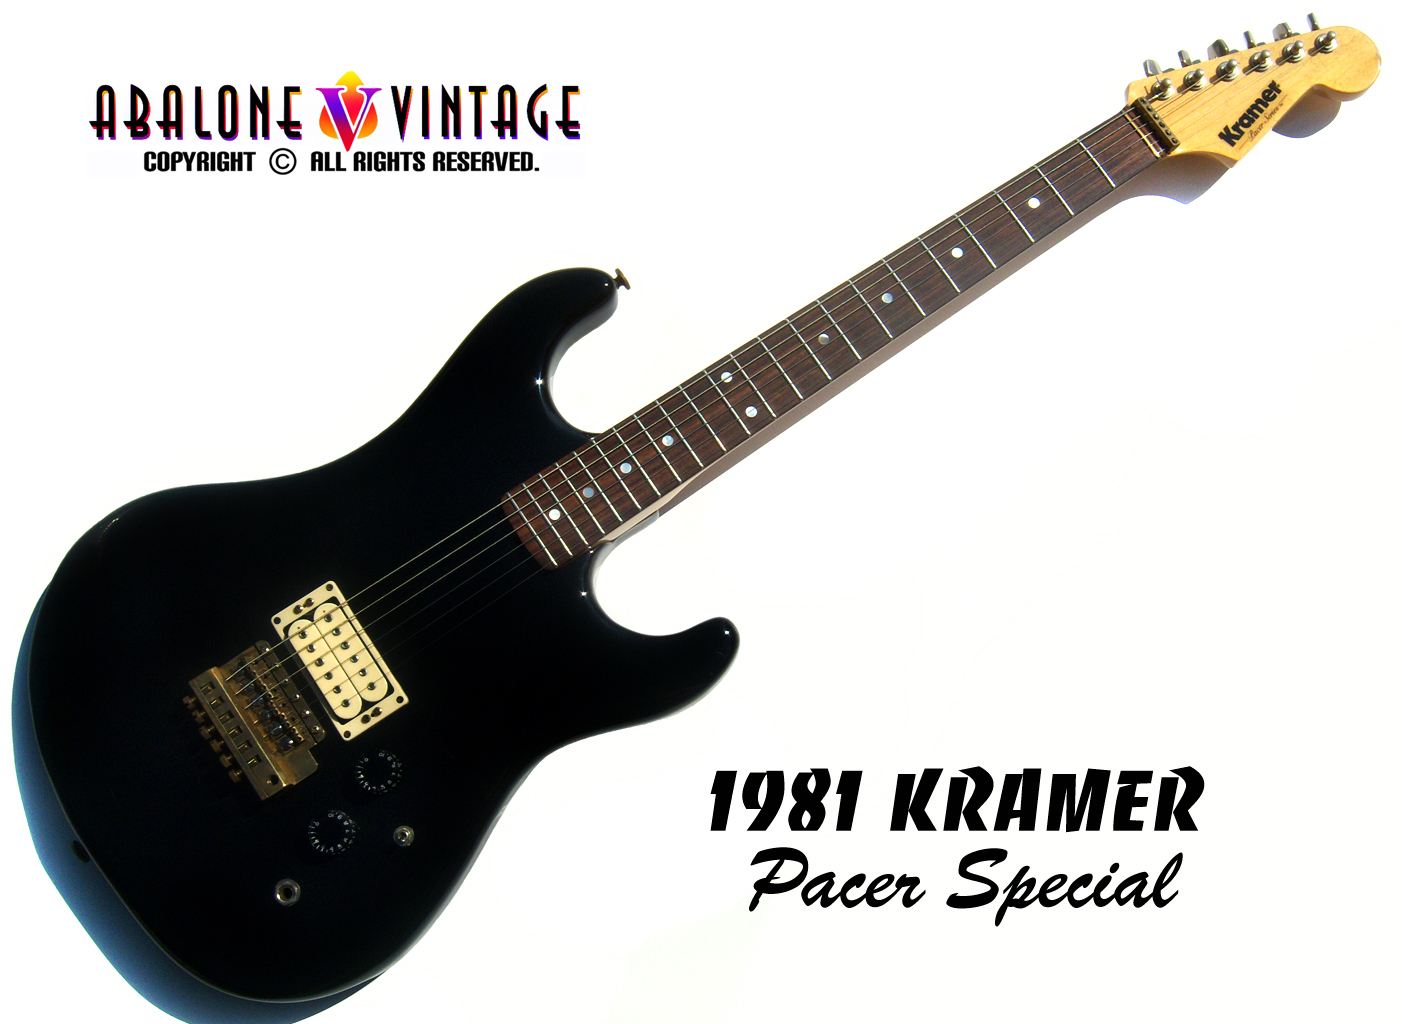 1981 Kramer Pacer Special Guitar Vintage guitars